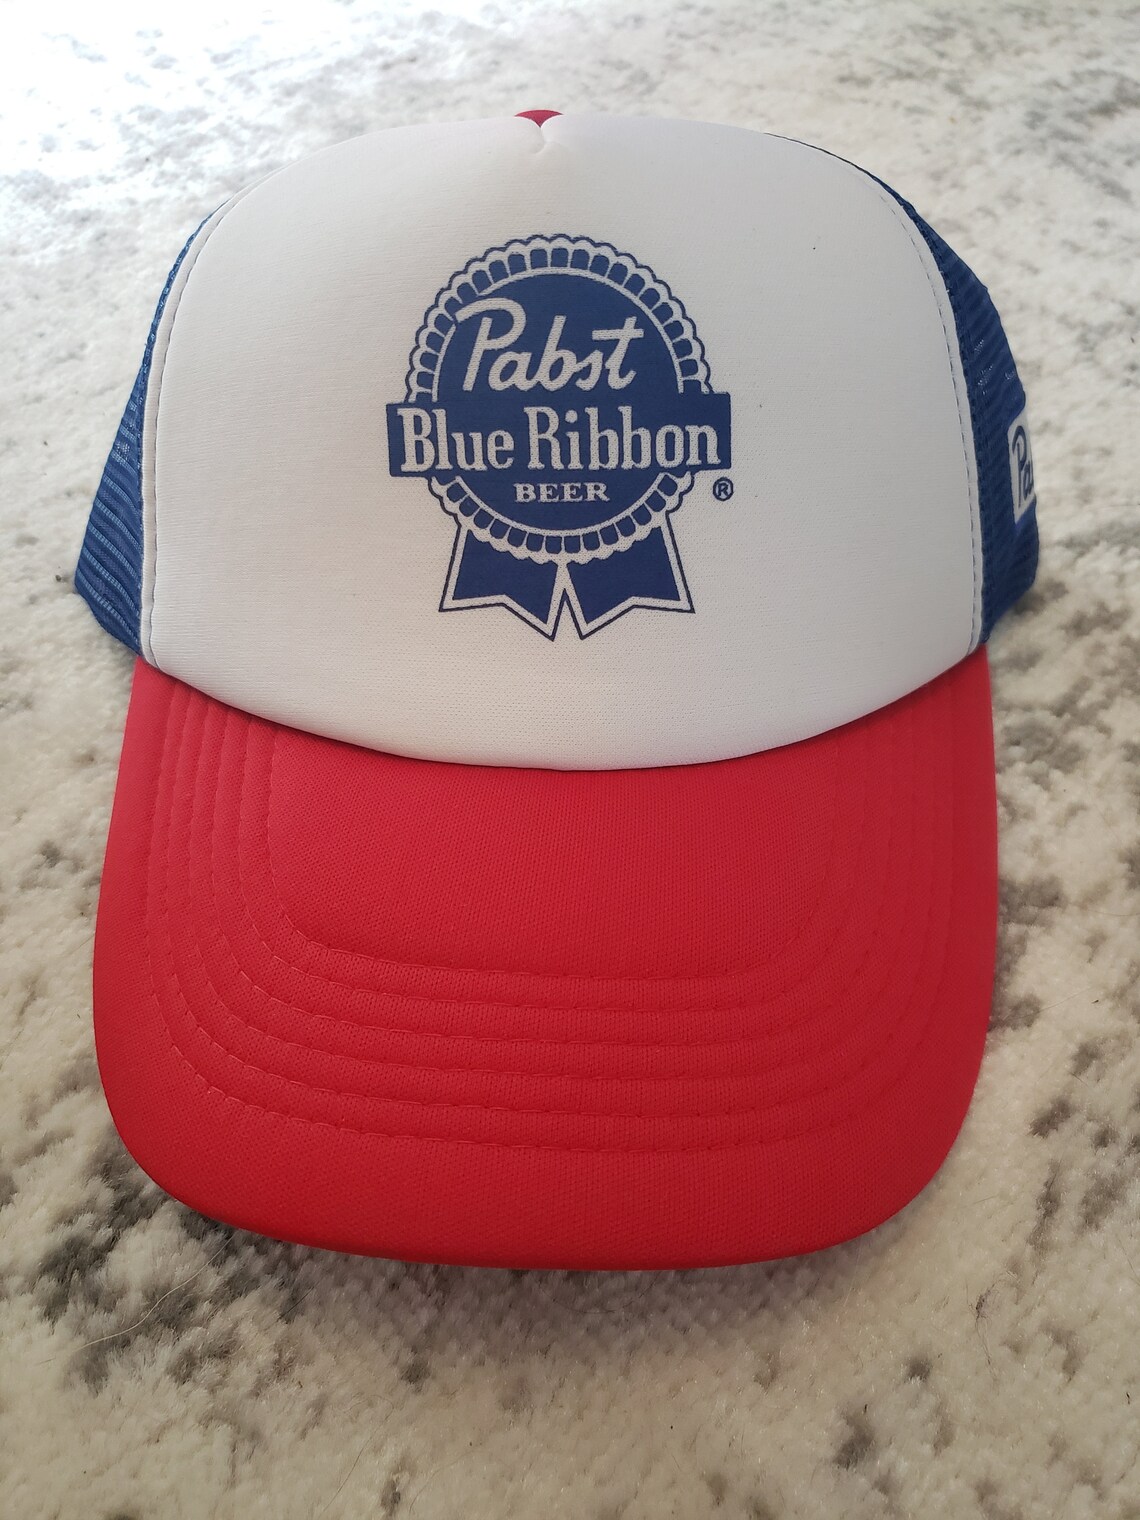 Pabst Blue Ribbon Trucker Hat | Etsy